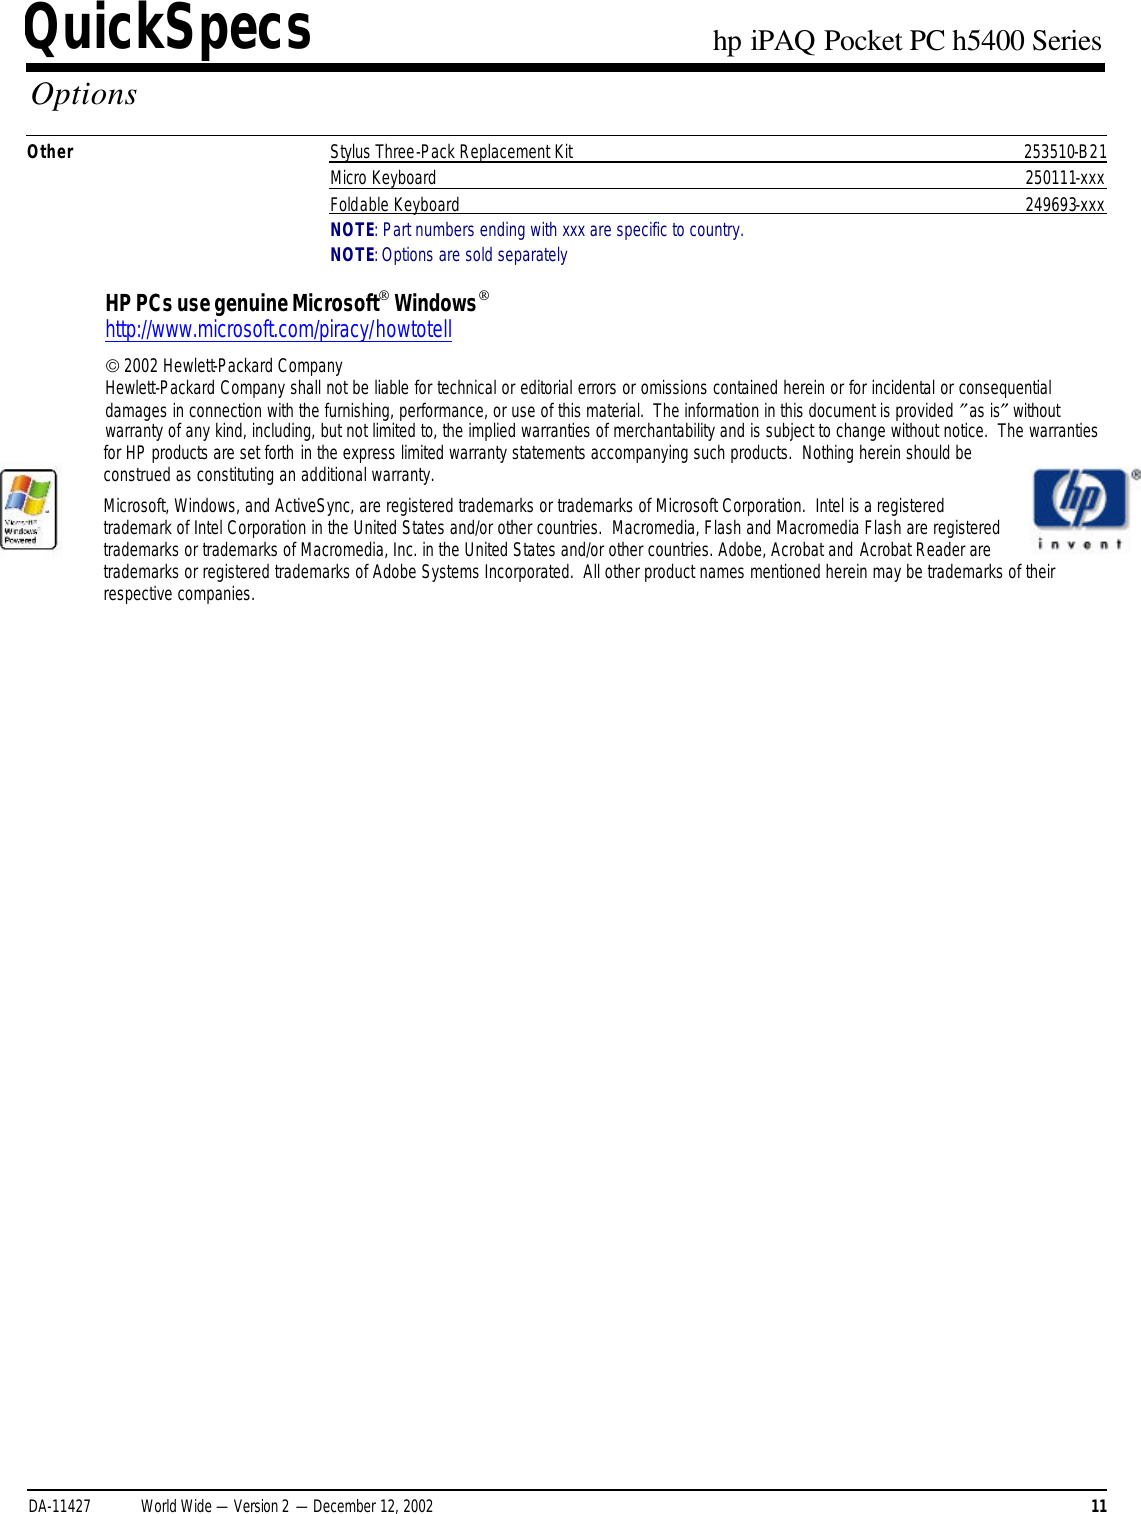 Page 11 of 11 - HP IPAQ Pocket PC H5400 Series - QuickSpecs Overview I PAQ Quick Specs Lpia8003